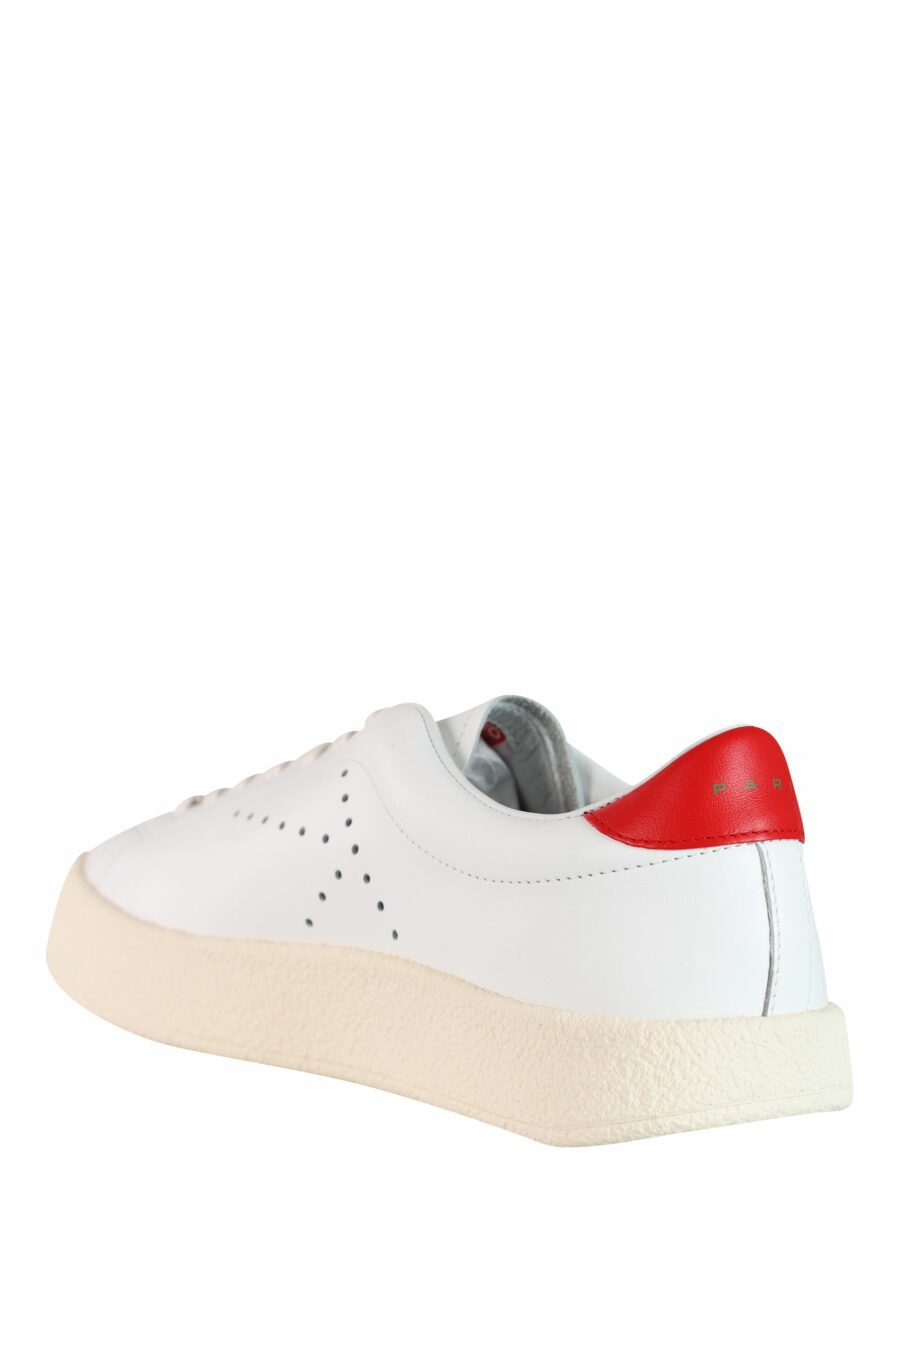 Baskets "kenzoswing" blanches avec logo et détails rouges - IMG 3554